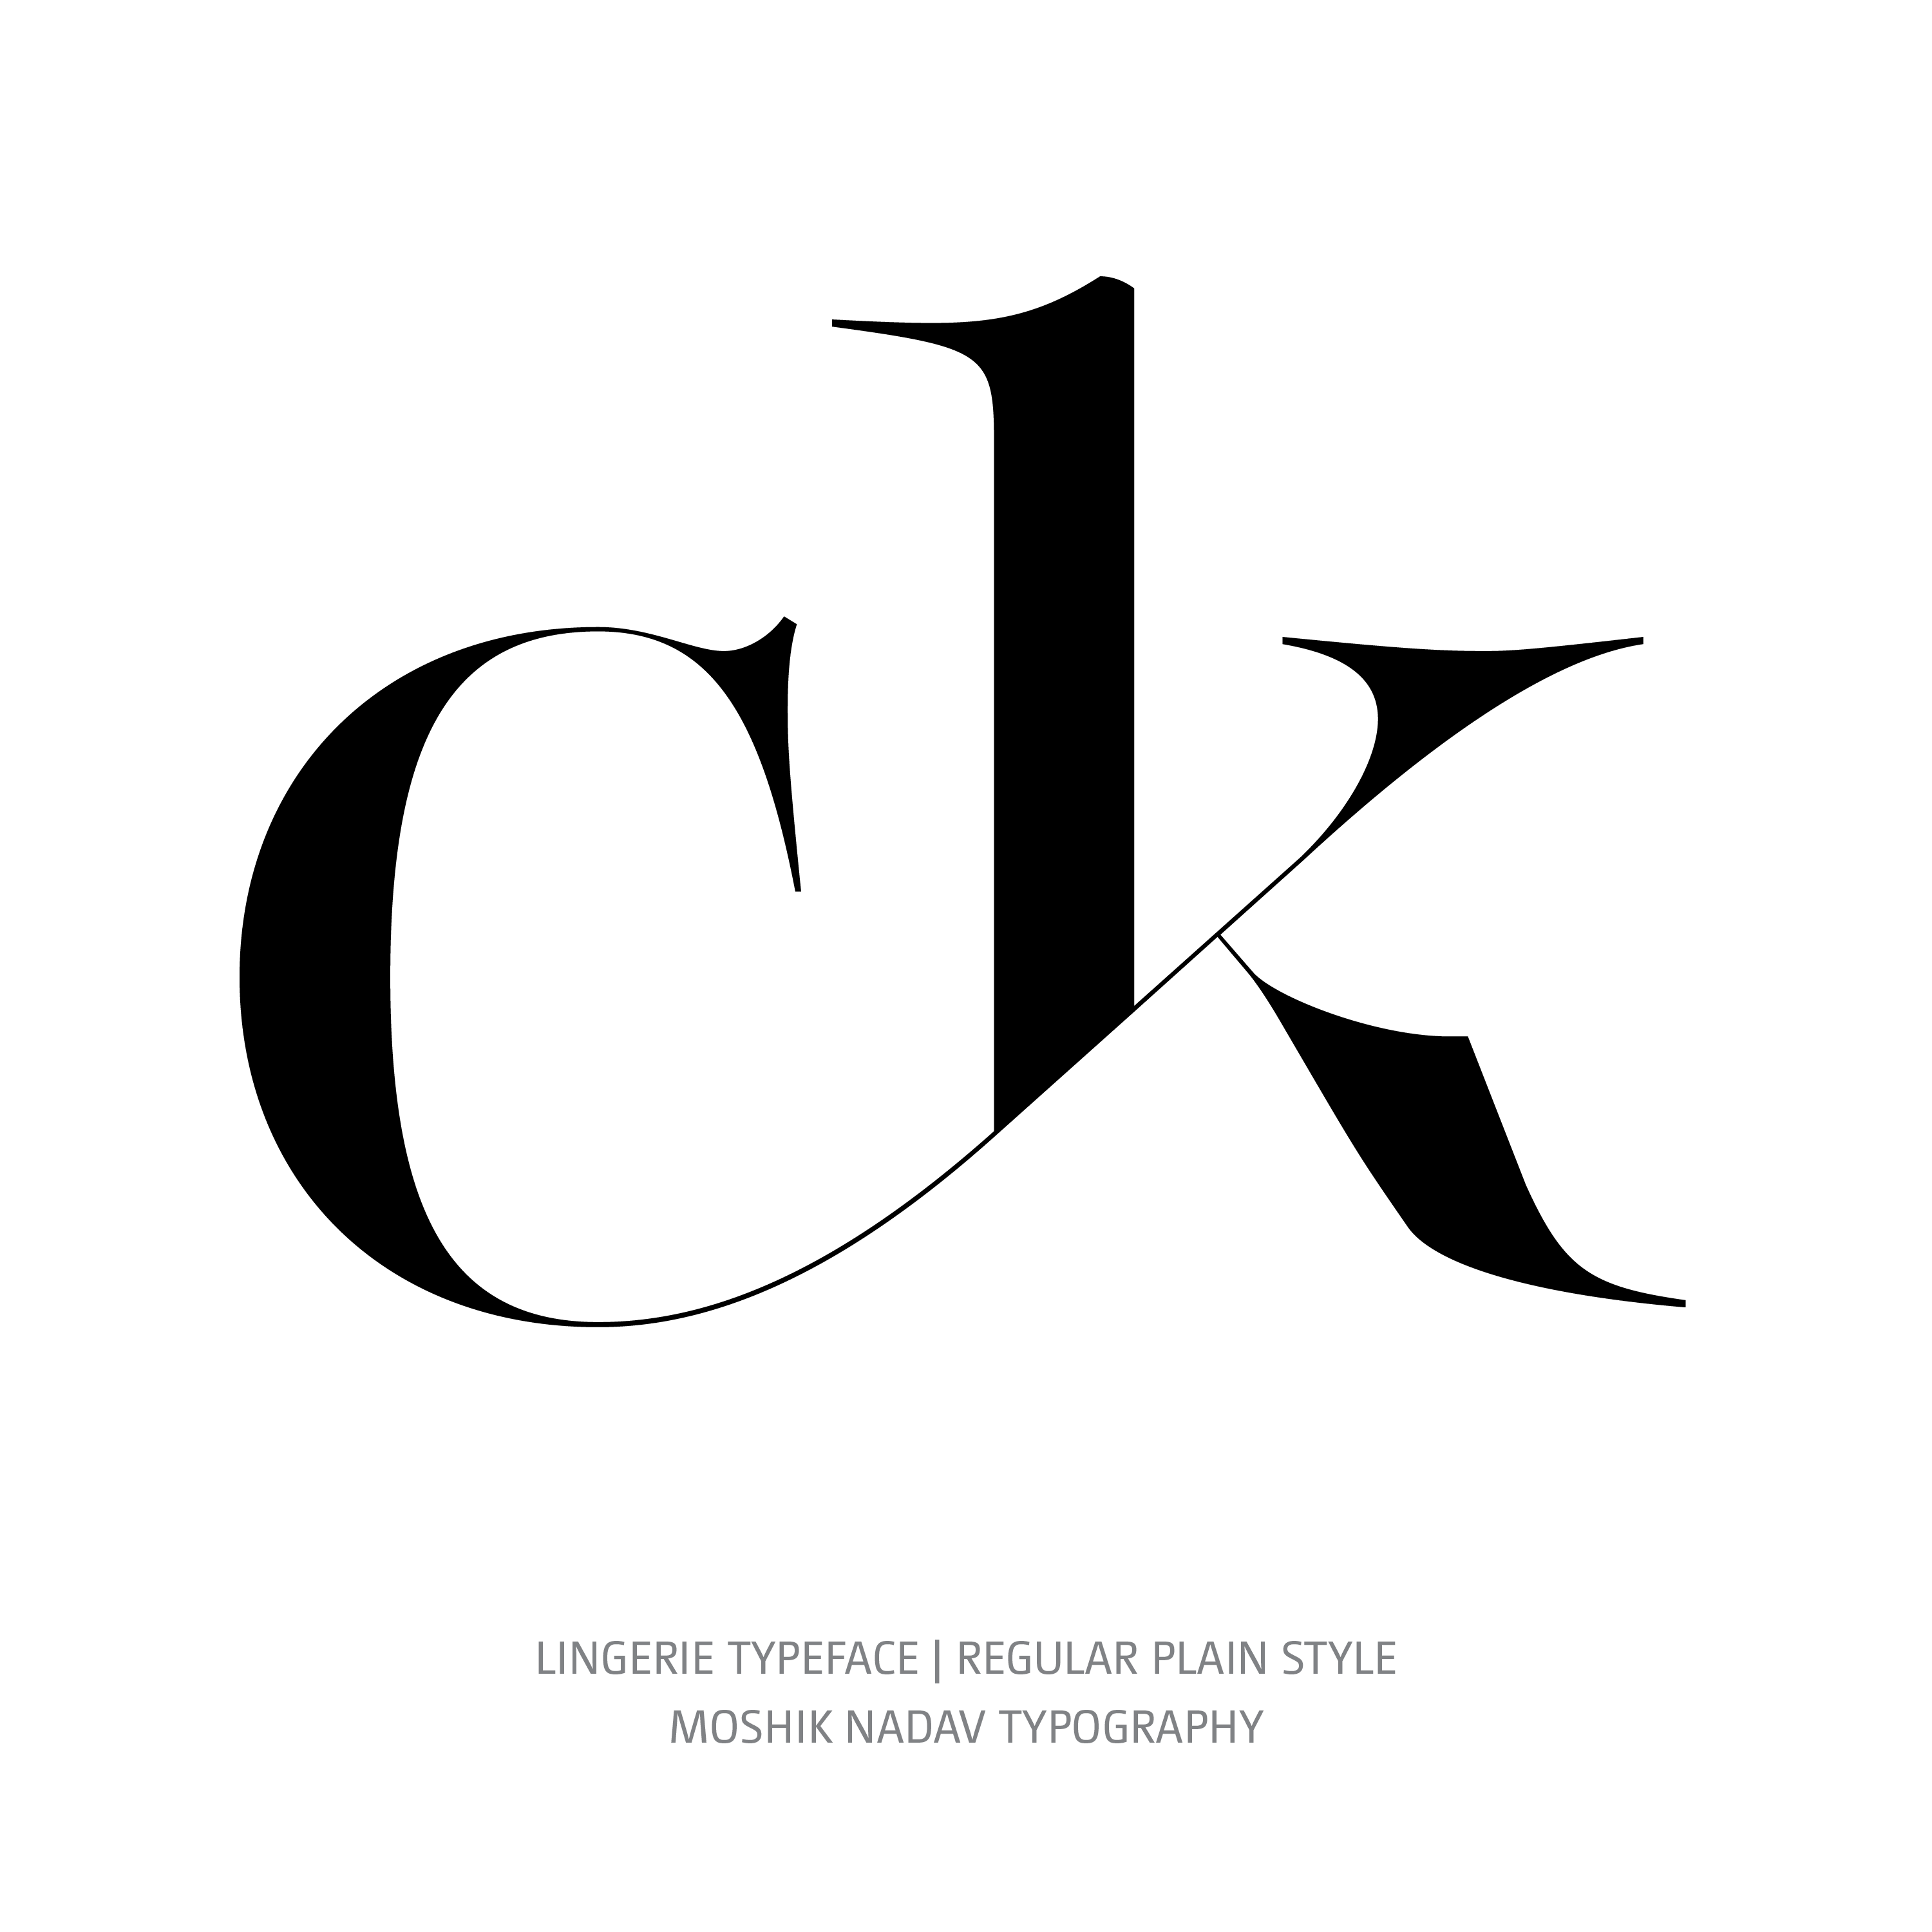 Lingerie Typeface Regular Plain glyph